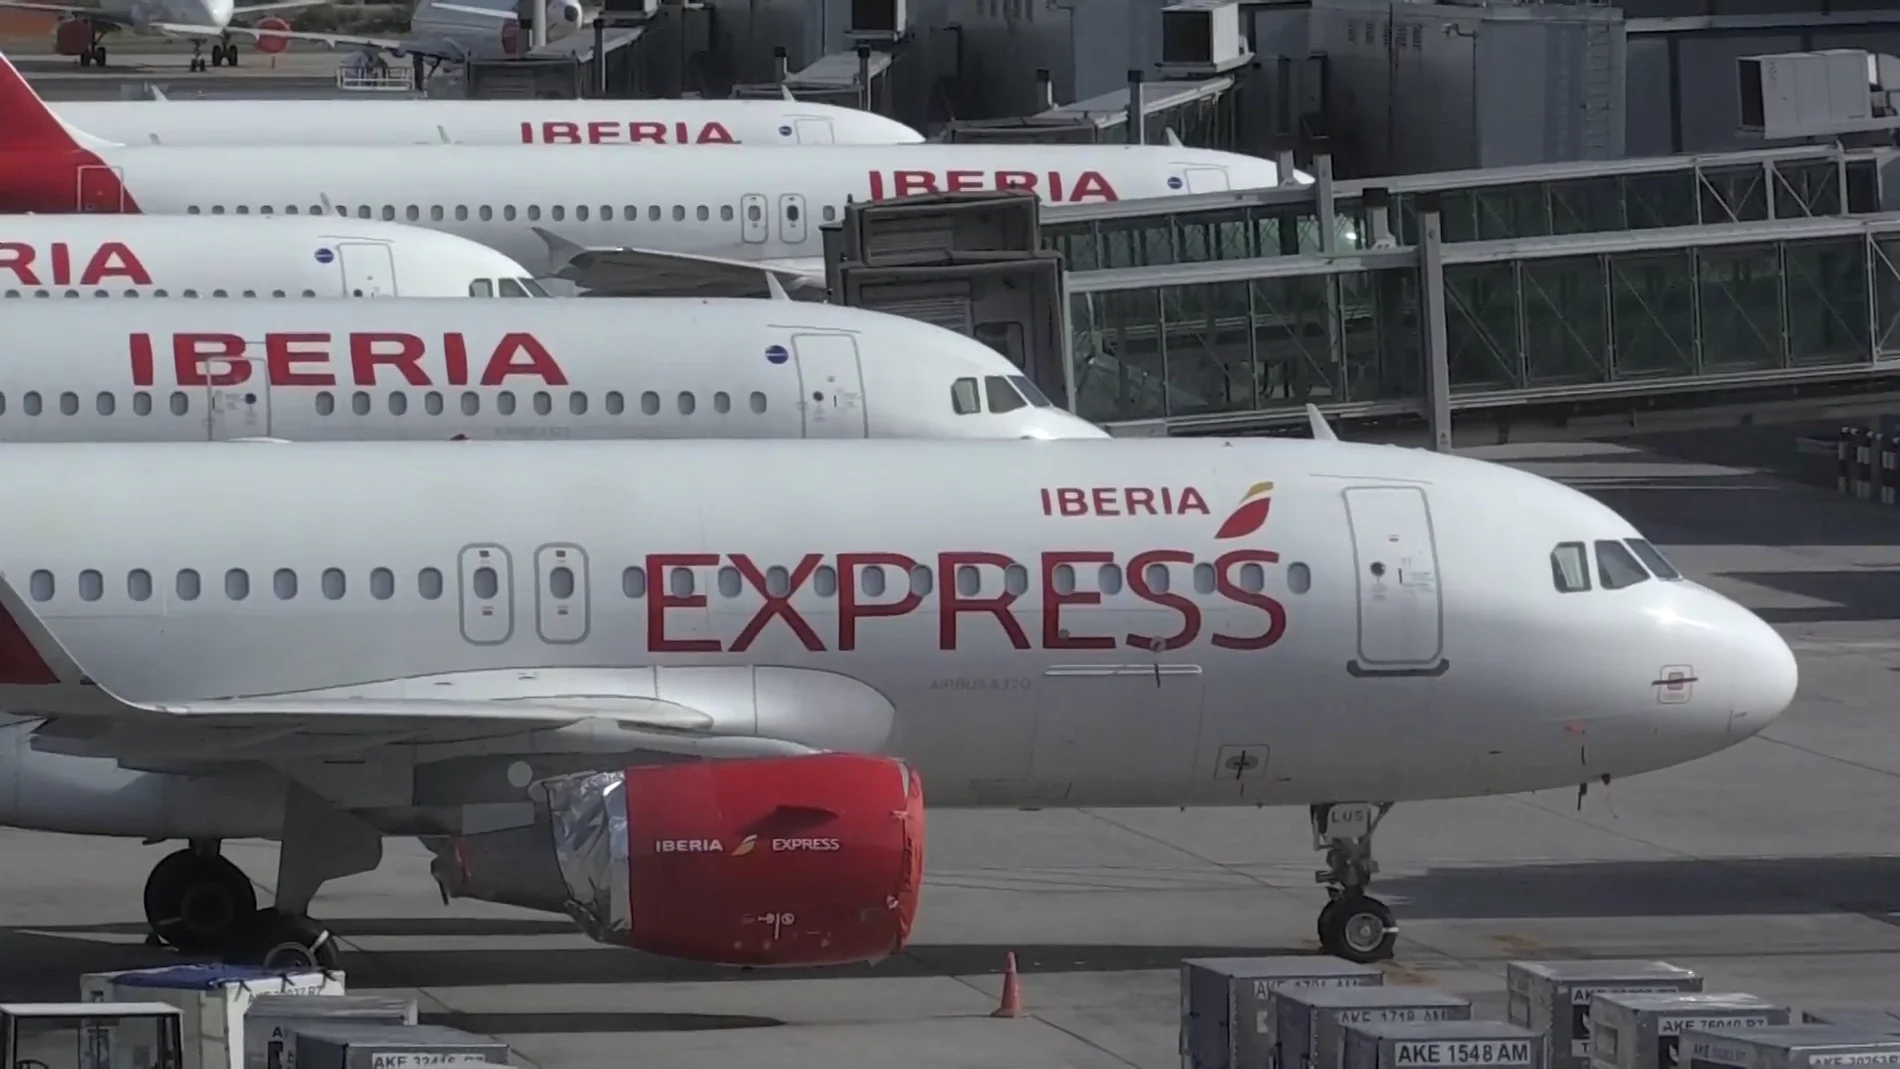 Huelga de Iberia Express y EasyJet: consulta los vuelos cancelados